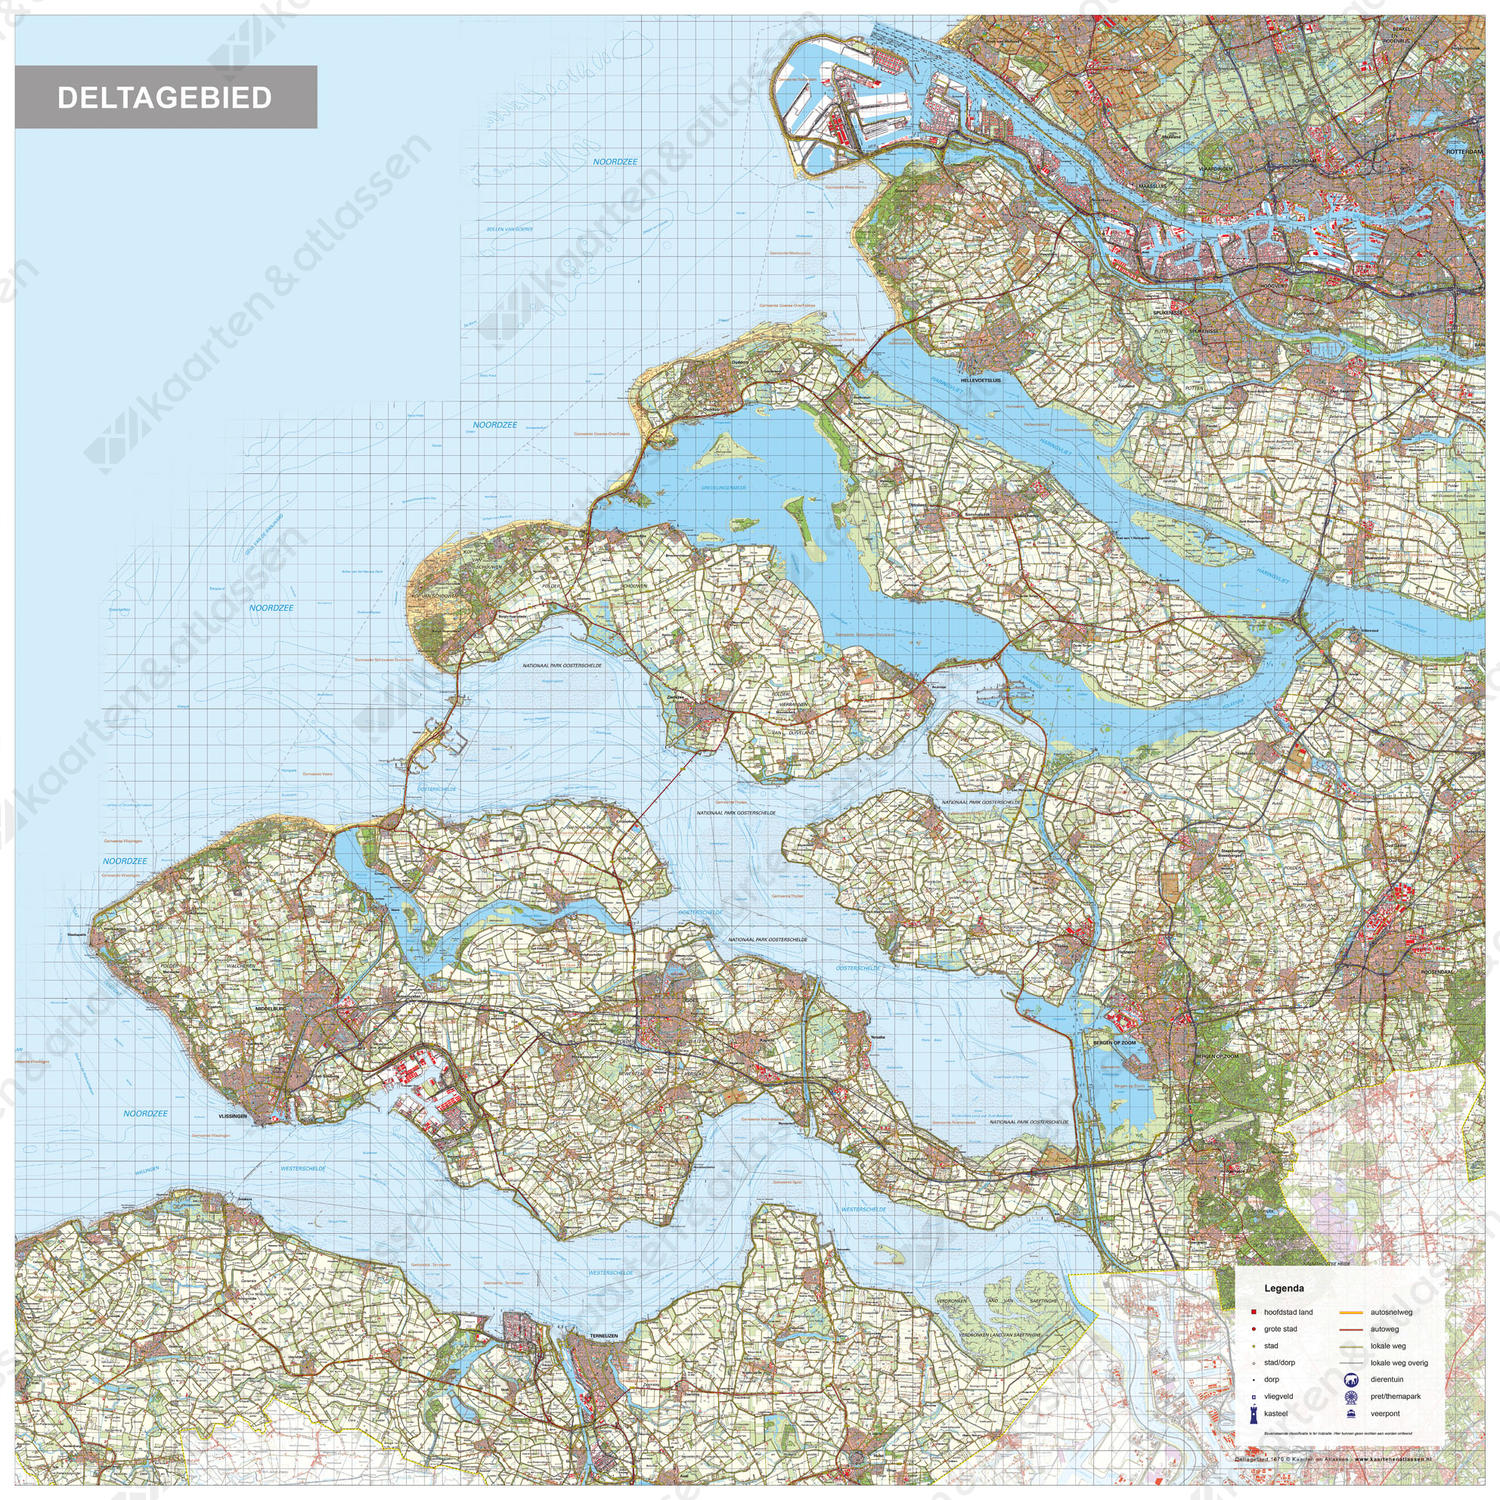 Nederlandse Delta regiokaart